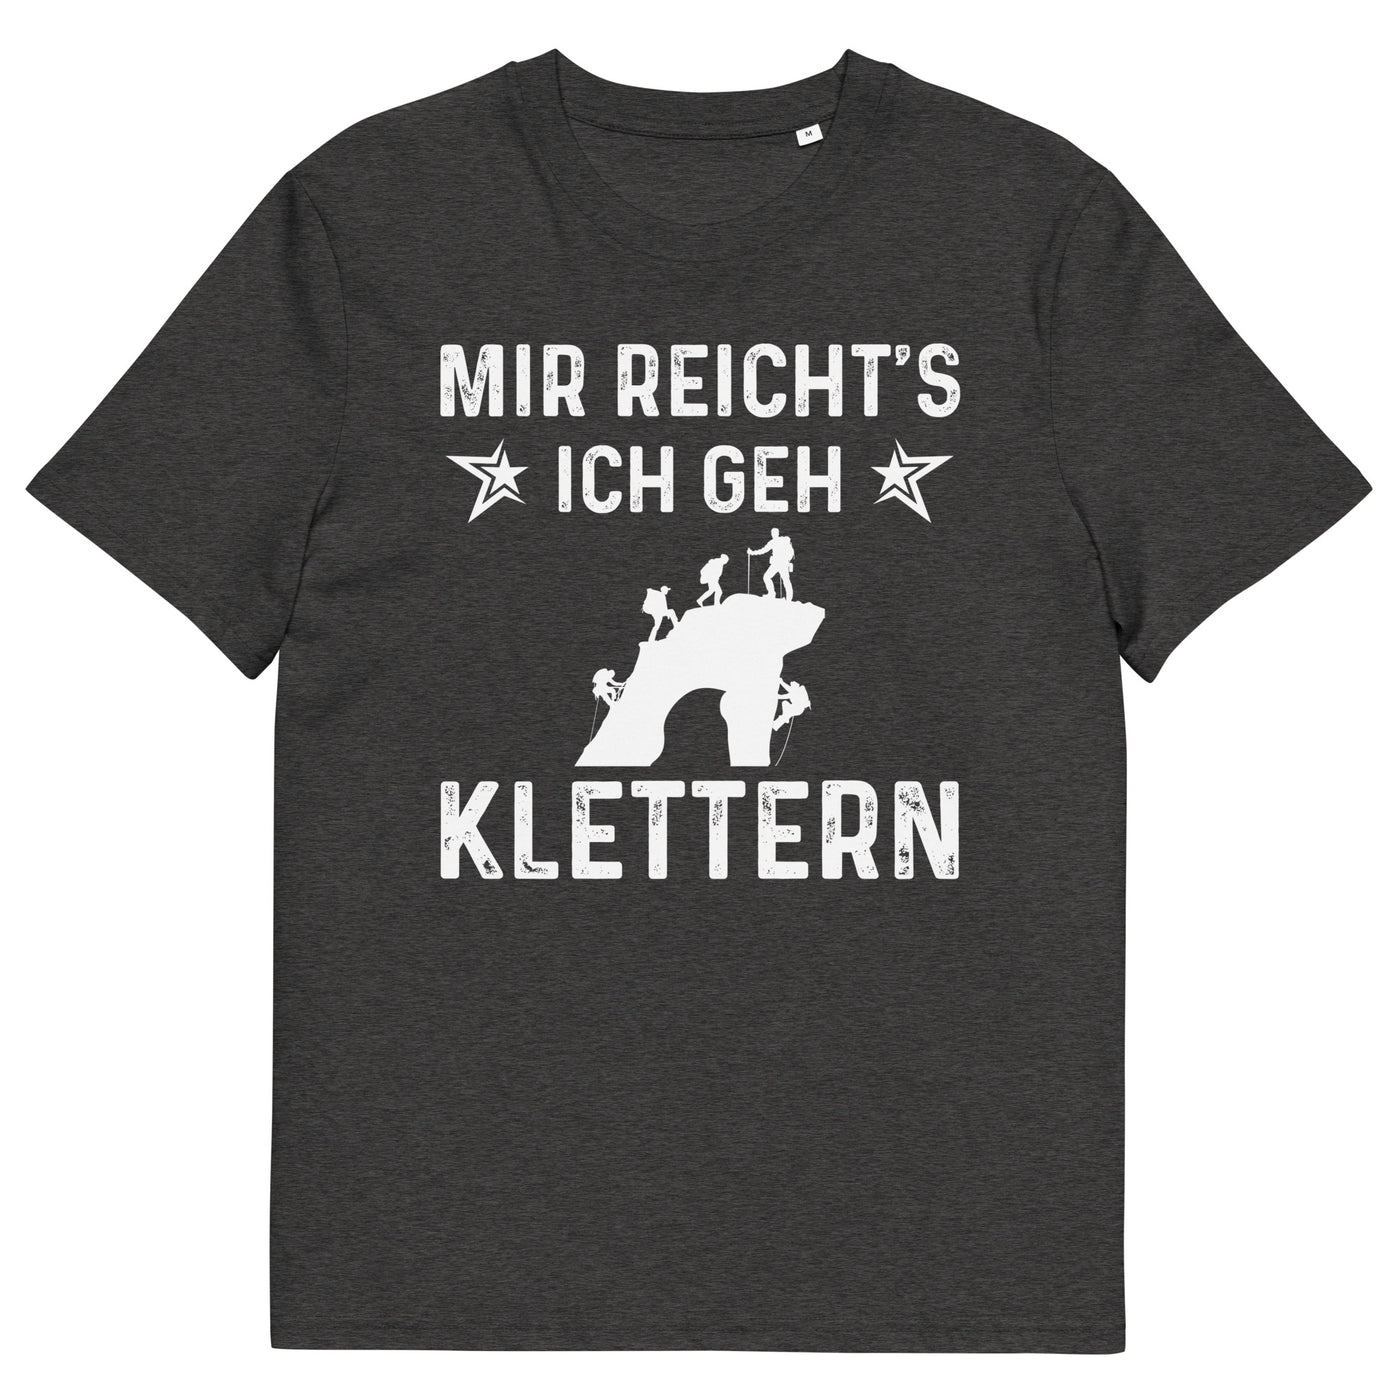 Mir Reicht's Ich Gen Klettern - Herren Premium Organic T-Shirt klettern xxx yyy zzz Dark Heather Grey